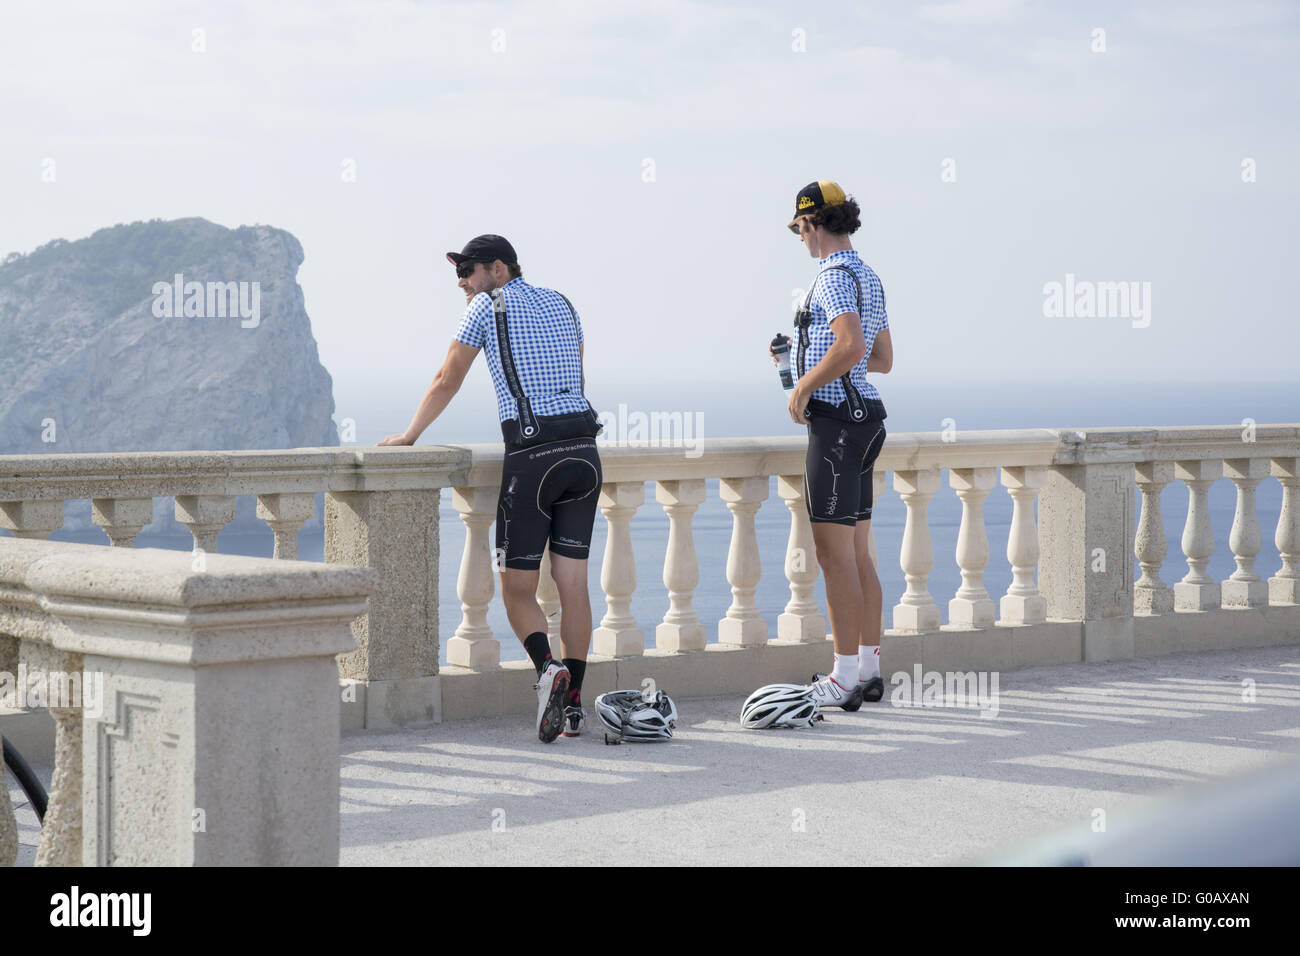 Deux cyclistes à admirer la vue de Formentor li Banque D'Images